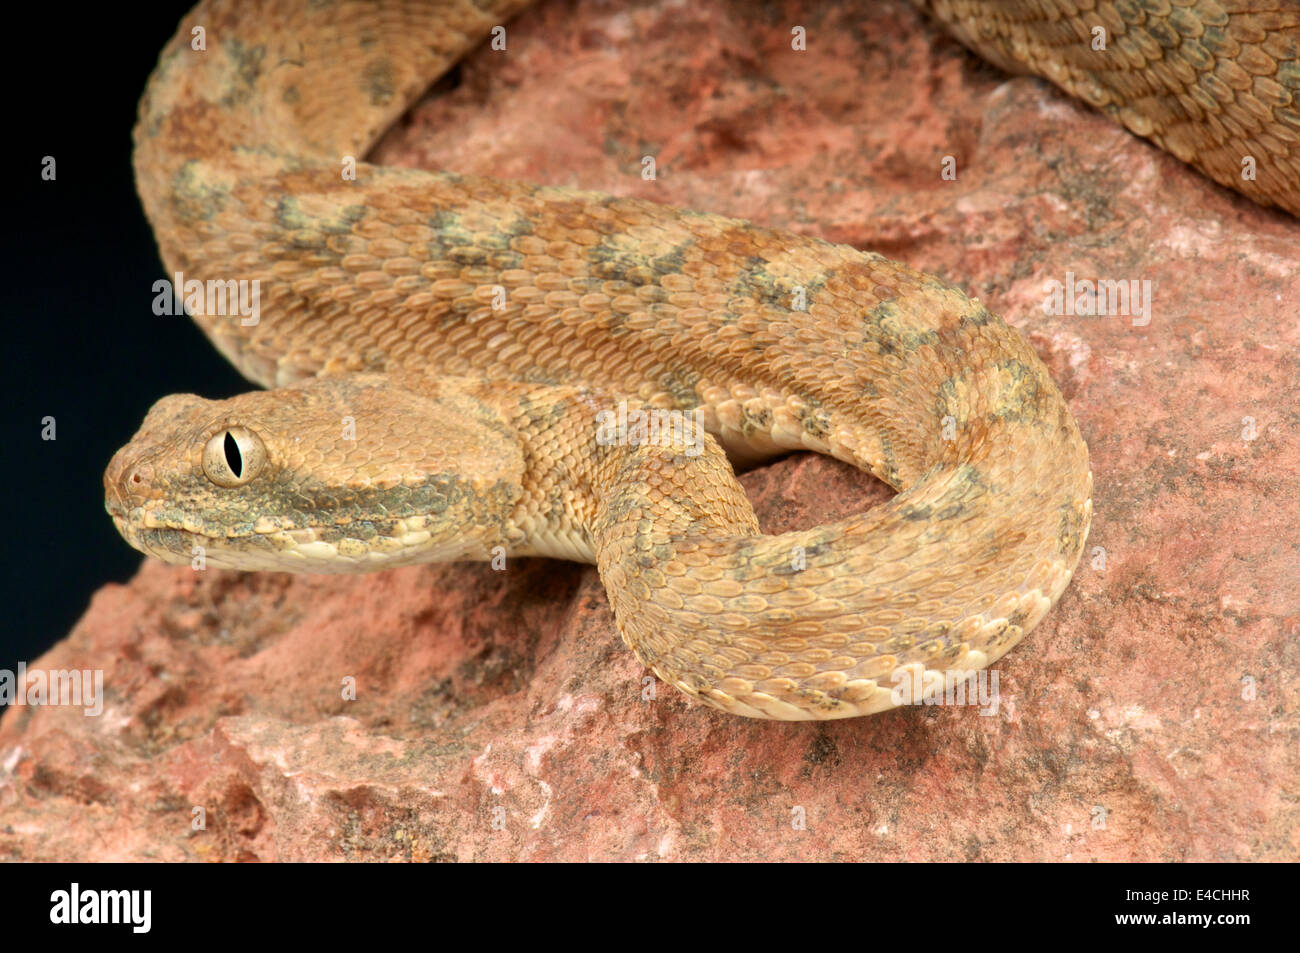 Palestine saw-scaled viper / Echis coloratus Stock Photo